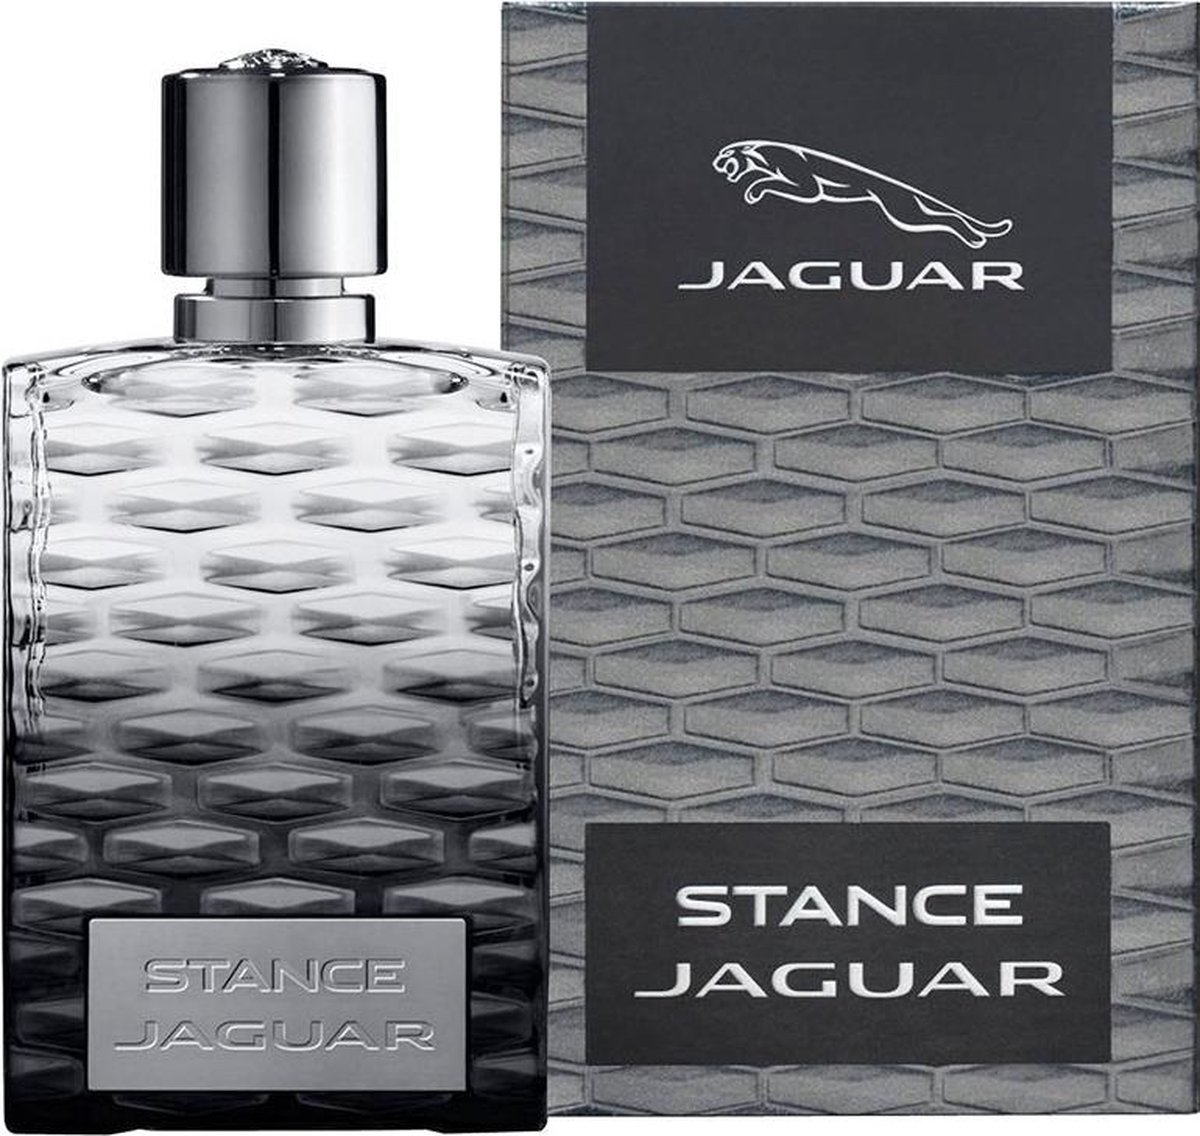 Stance Jaguar Eau De Toilette (edt) 60ml